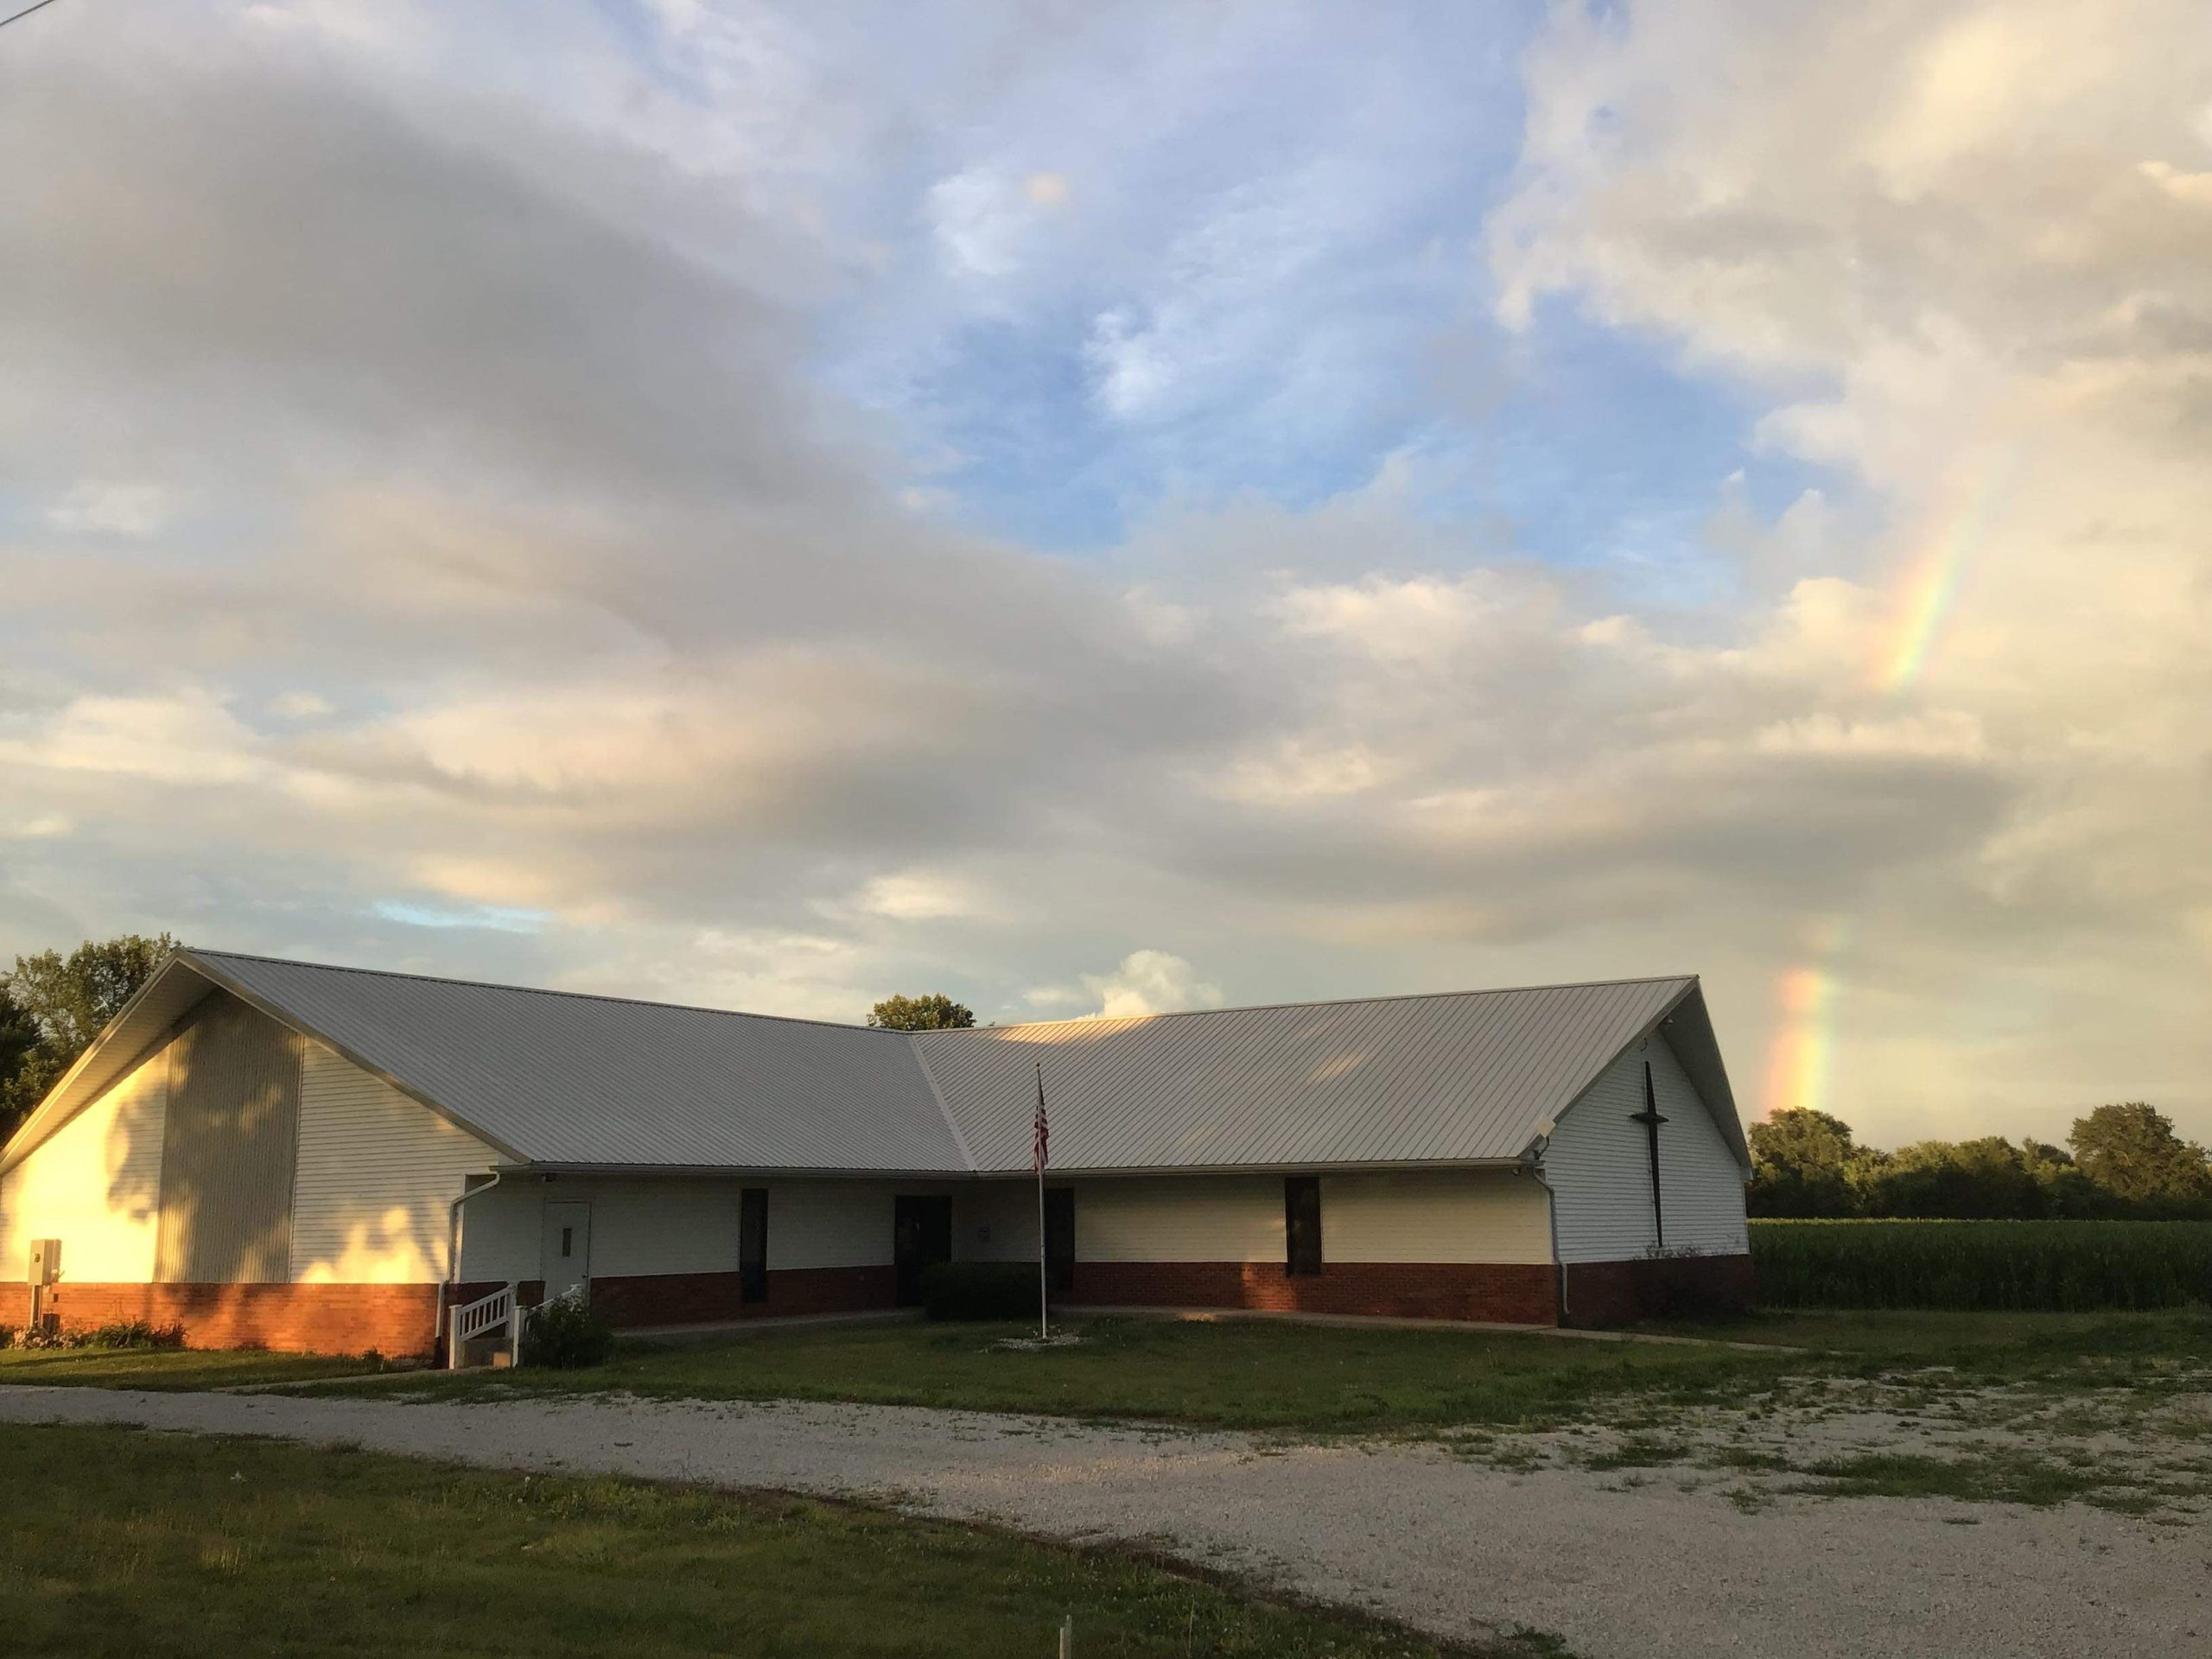 East Central Illinois Christian School building with a rainbow